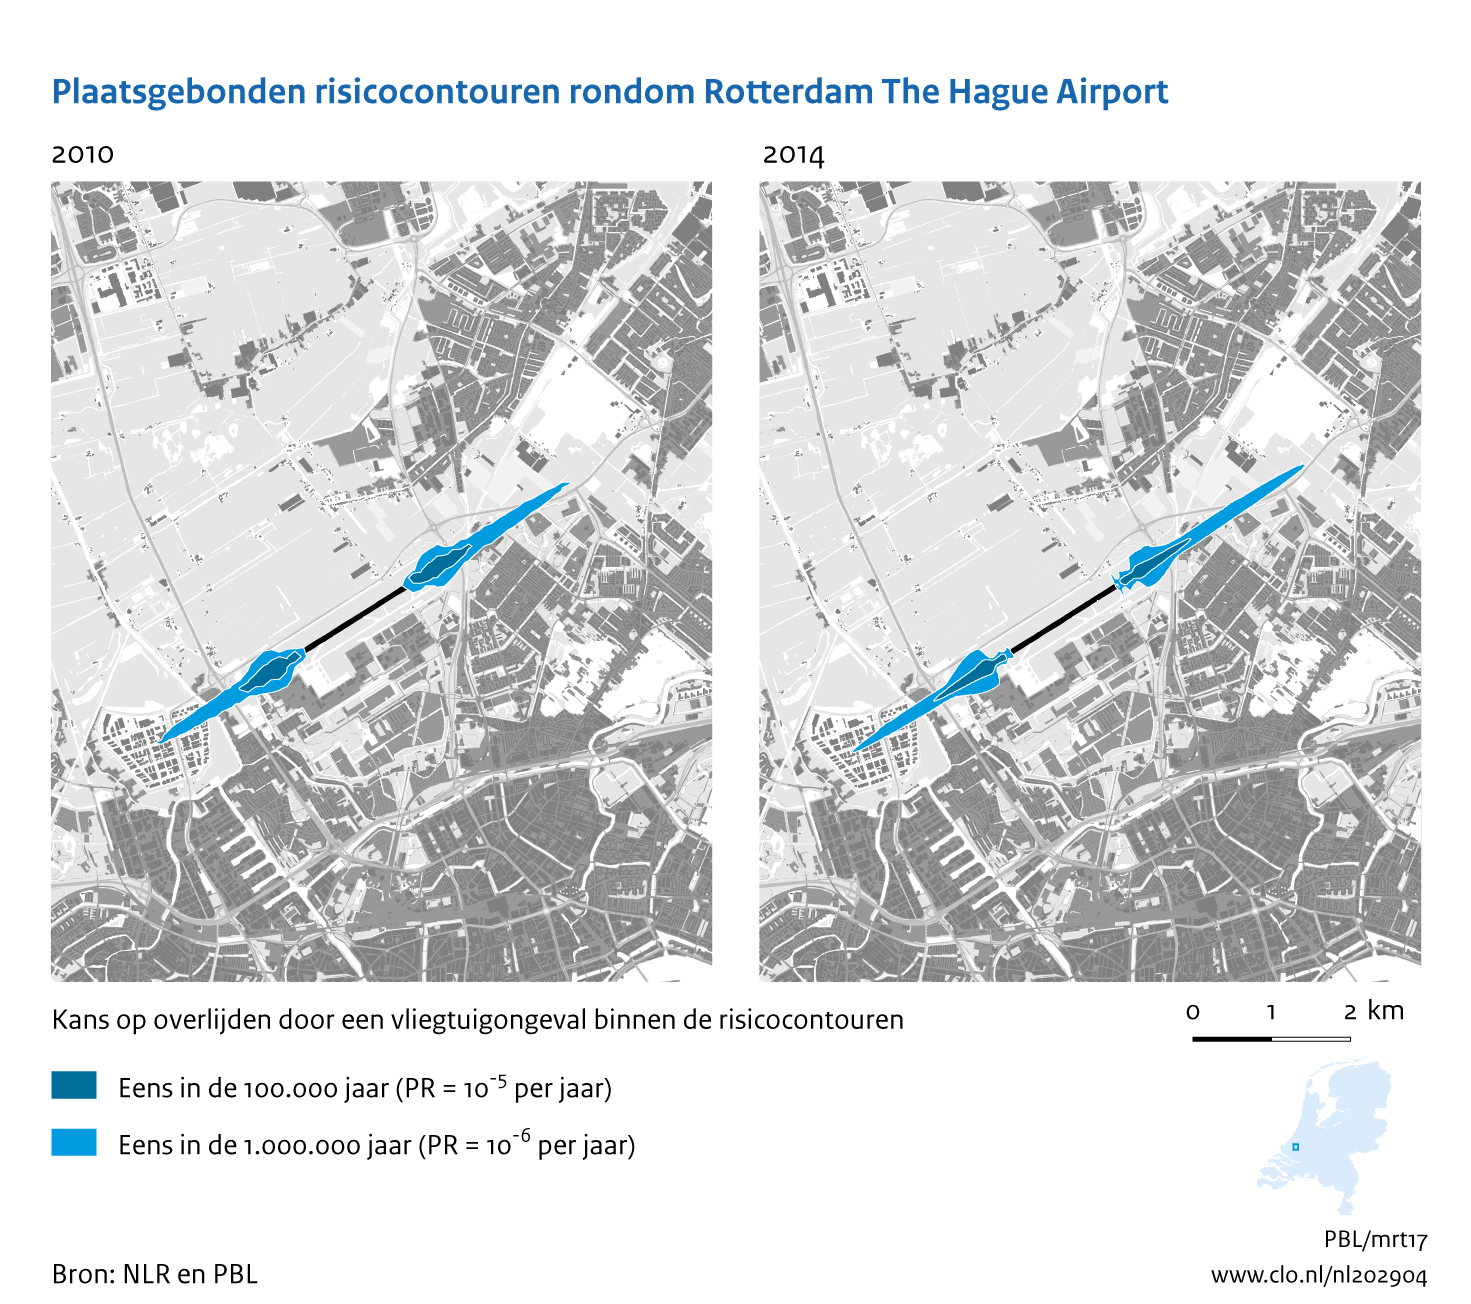 Figuur Plaatsgebonden risicocontouren rondom Rotterdam The Hague  Airport, 2010-2014. In de rest van de tekst wordt deze figuur uitgebreider uitgelegd.